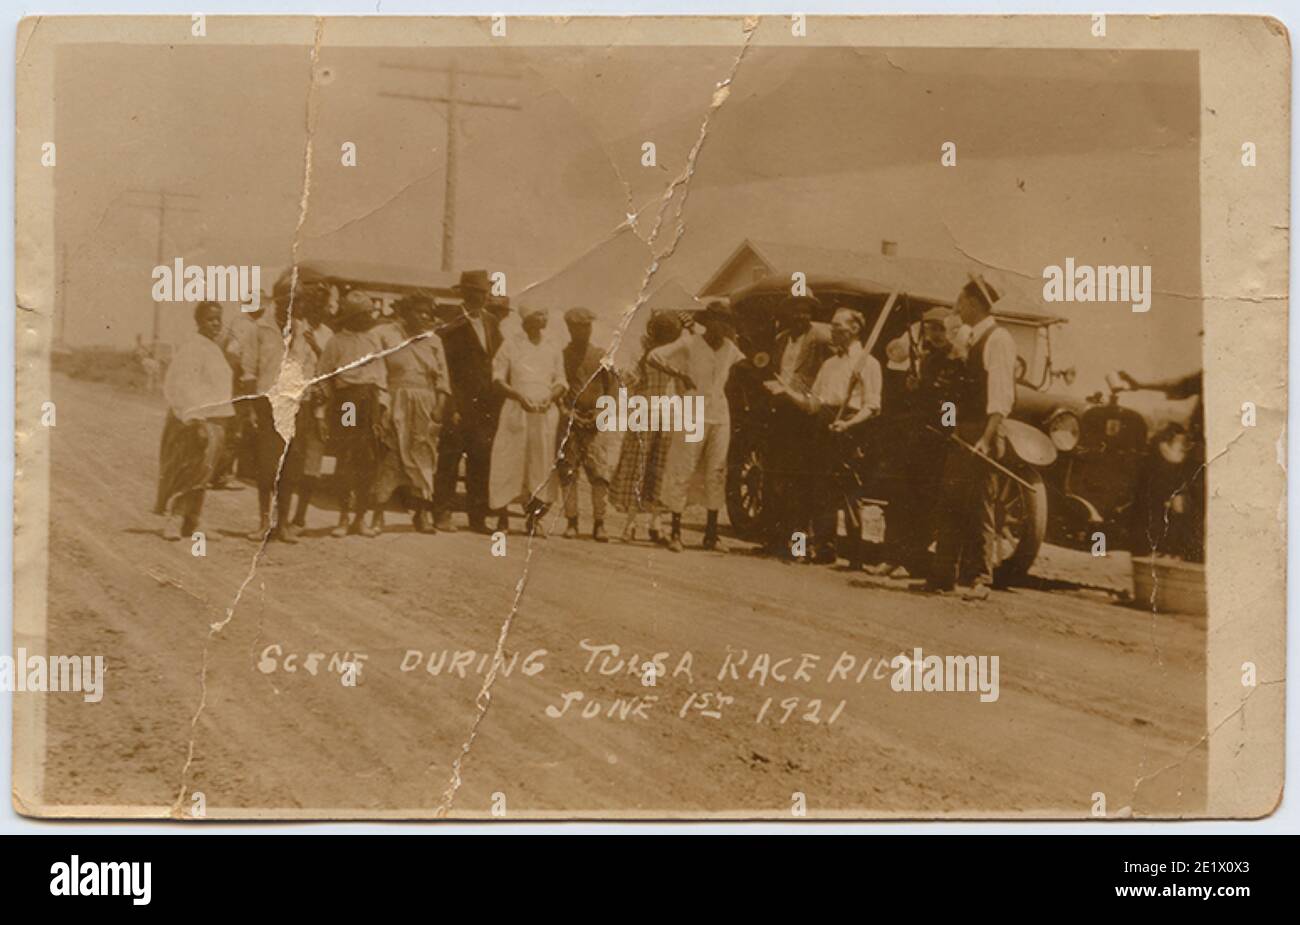 Fotografia d'epoca con la didascalia 'SCENE DURANTE LA GARA DI TULSA RIOT 1 GIUGNO 1921' - molte persone sono state rese senza casa dopo una notte di saccheggio. Foto Stock